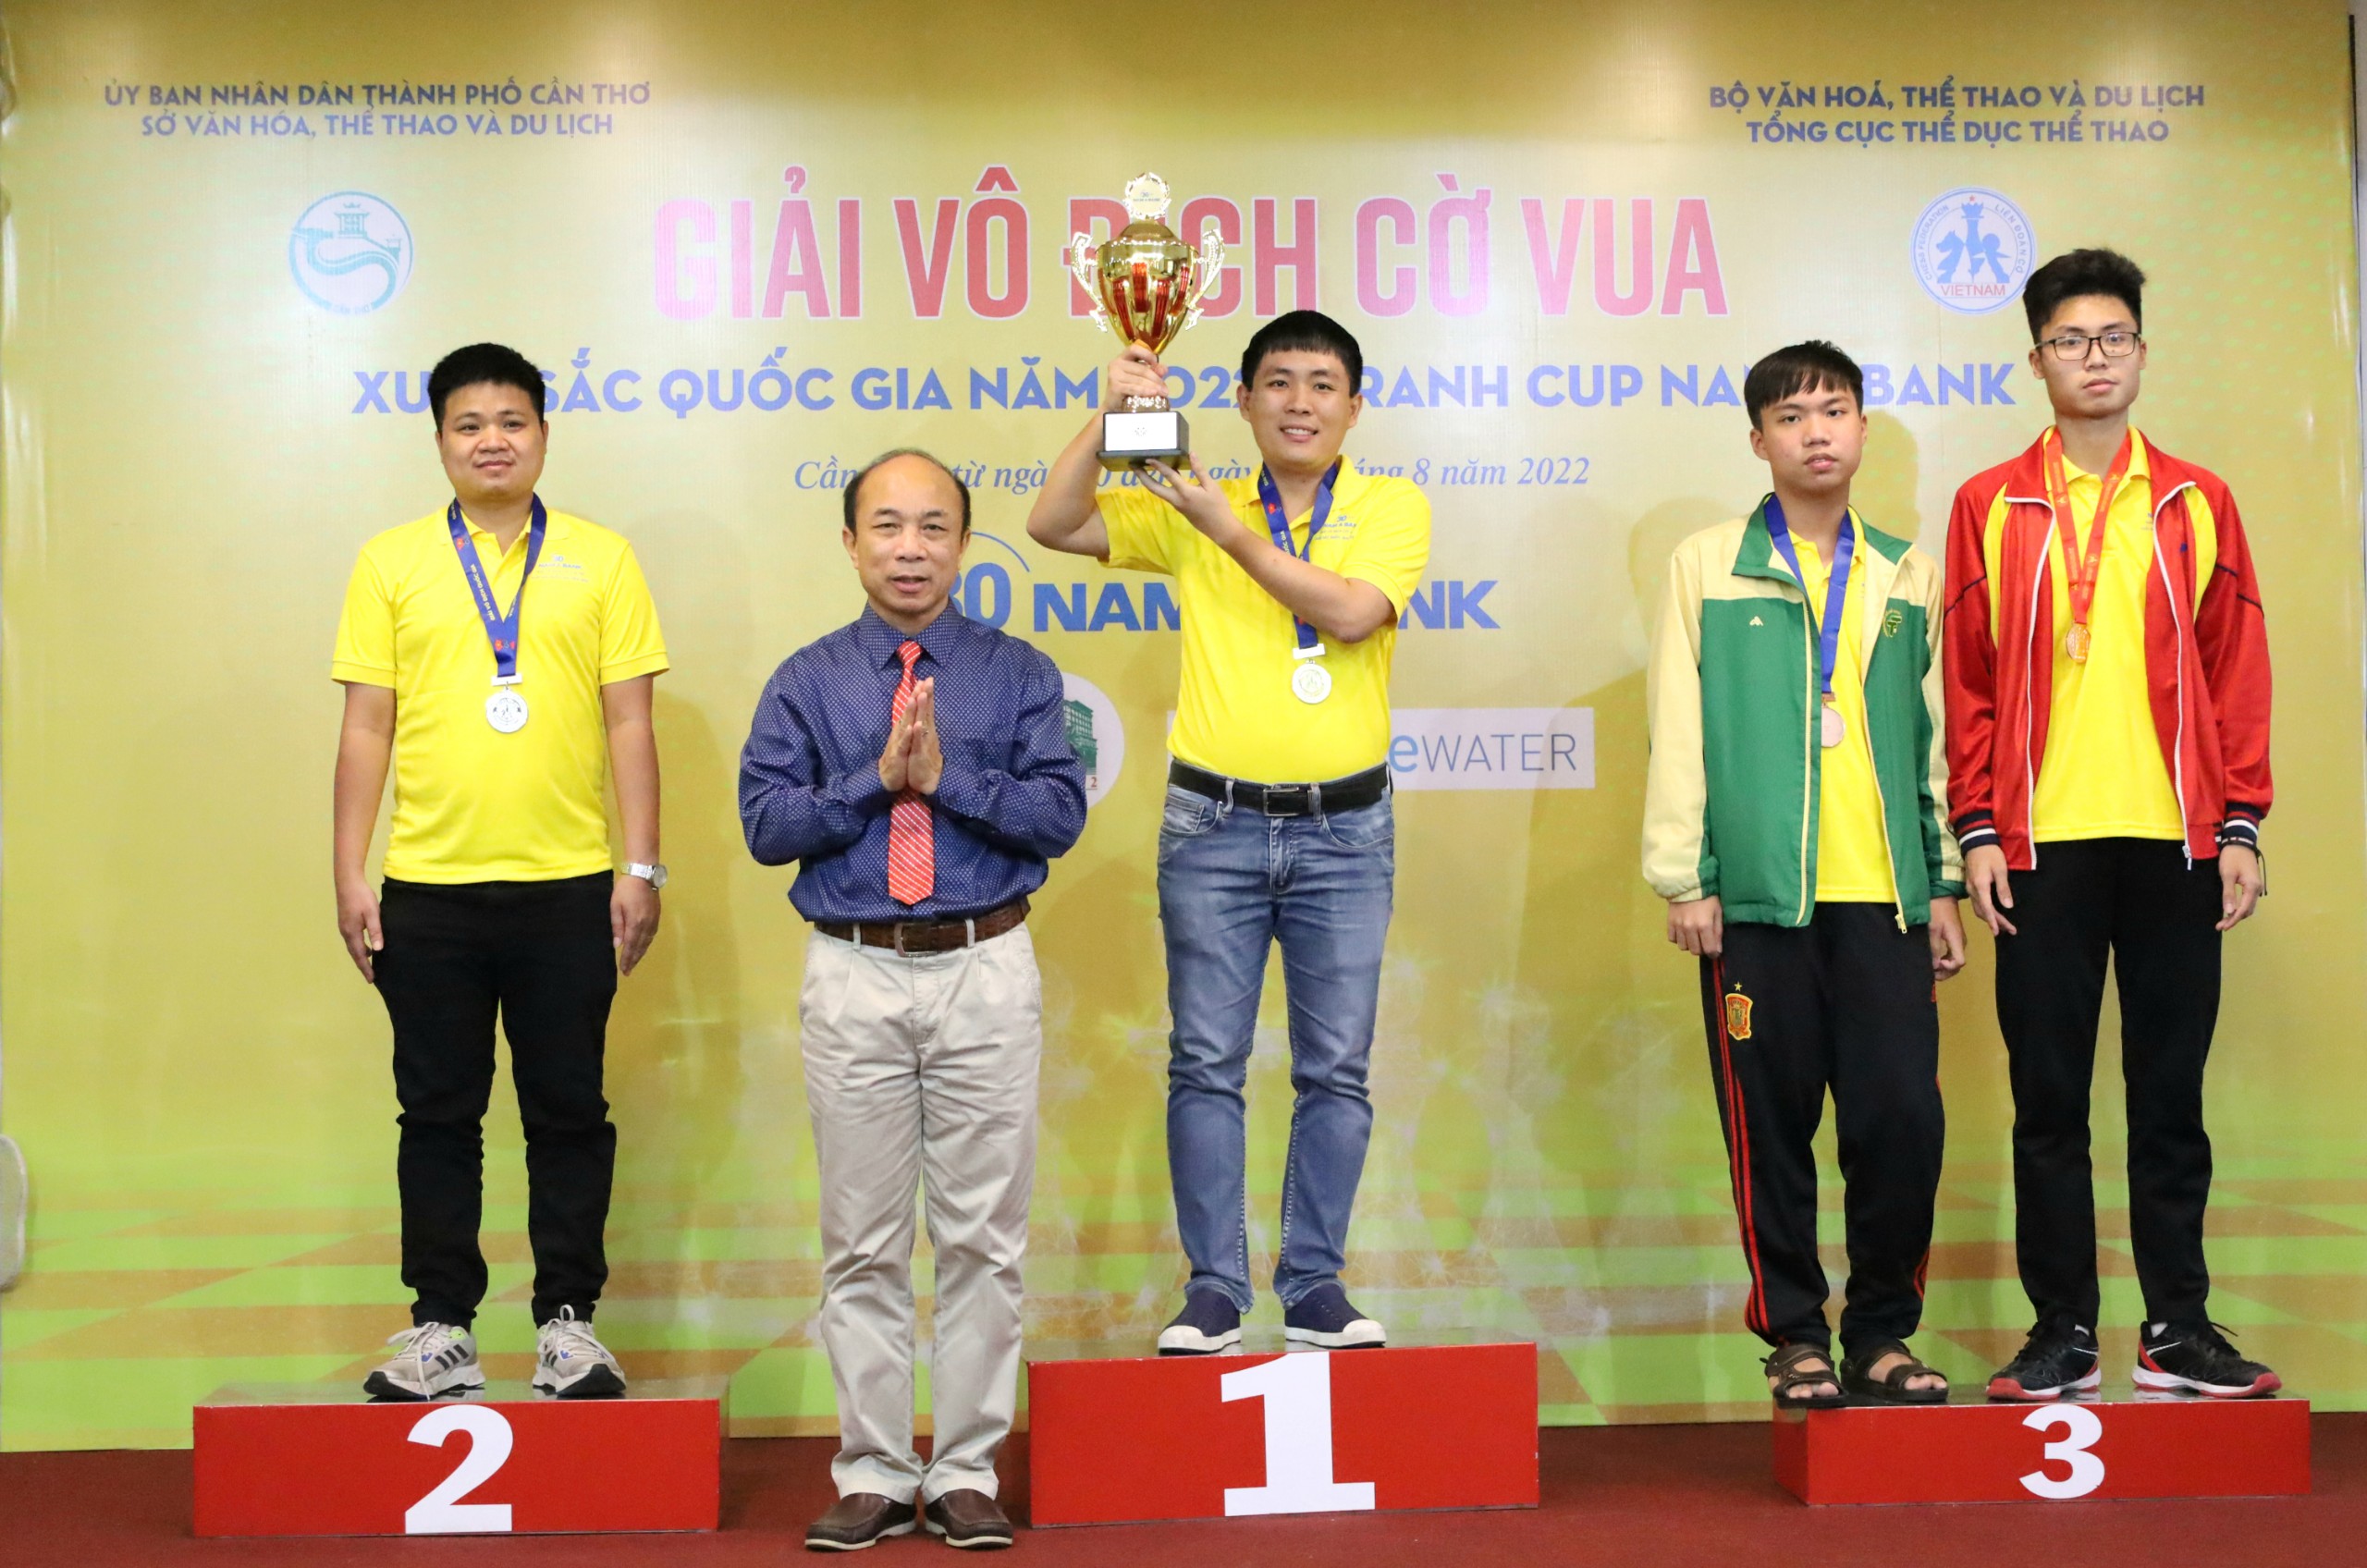 Ông Nguyễn Minh Thắng - Trưởng Bộ môn Cờ - Tổng cục TDTT, Phó Chủ tịch Liên đoàn Cờ Việt Nam trao huy chương và cúp cho các vận động viên.